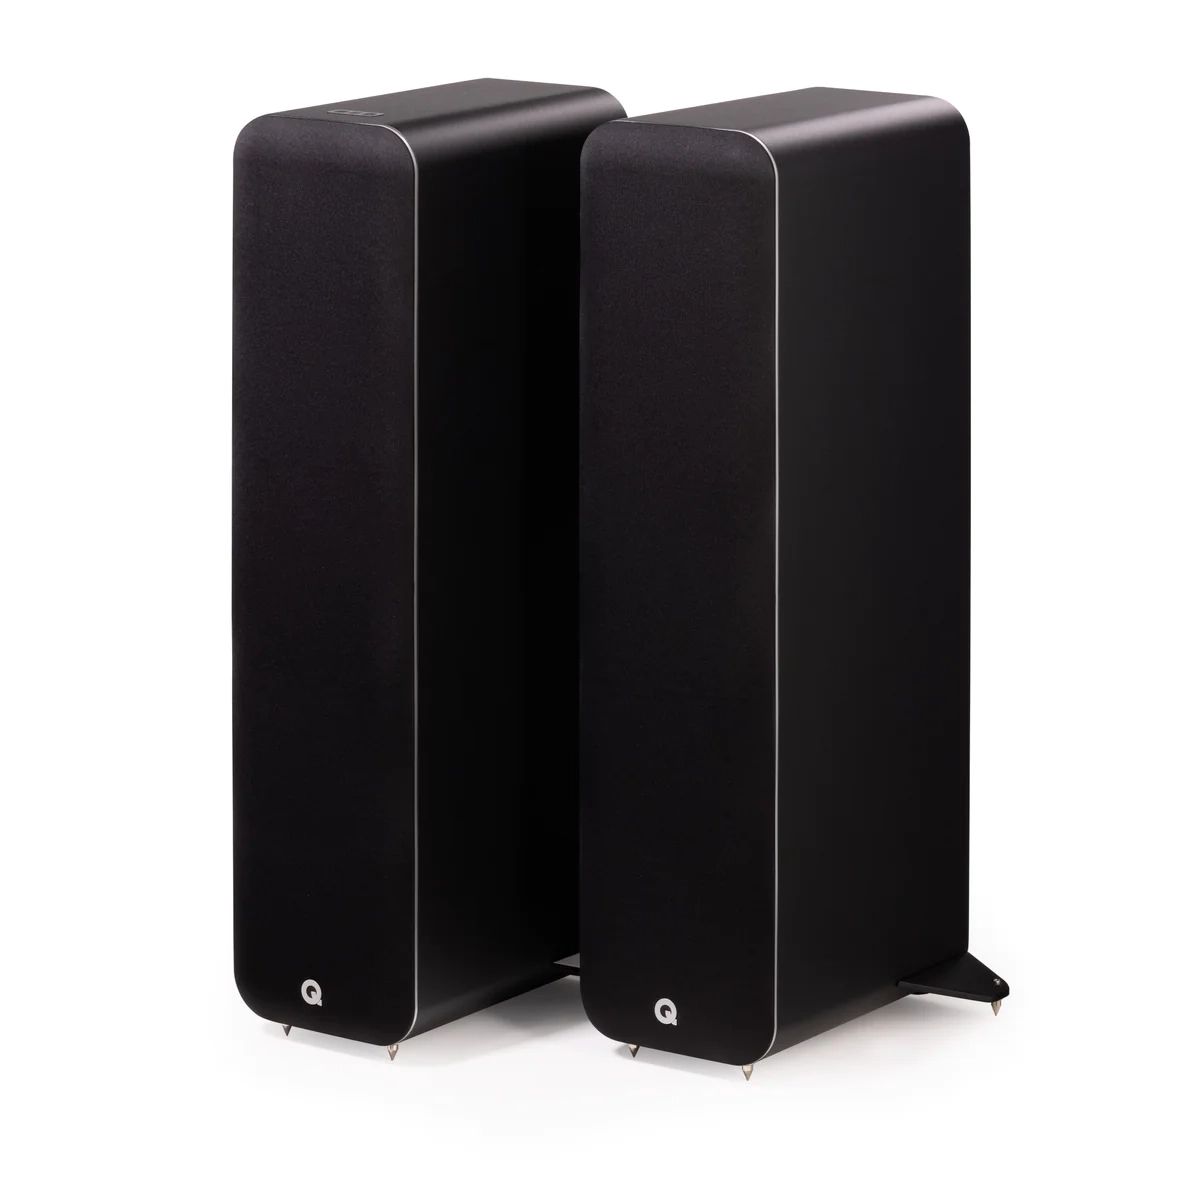 Q Acoustics M40 floorstanding Speakers